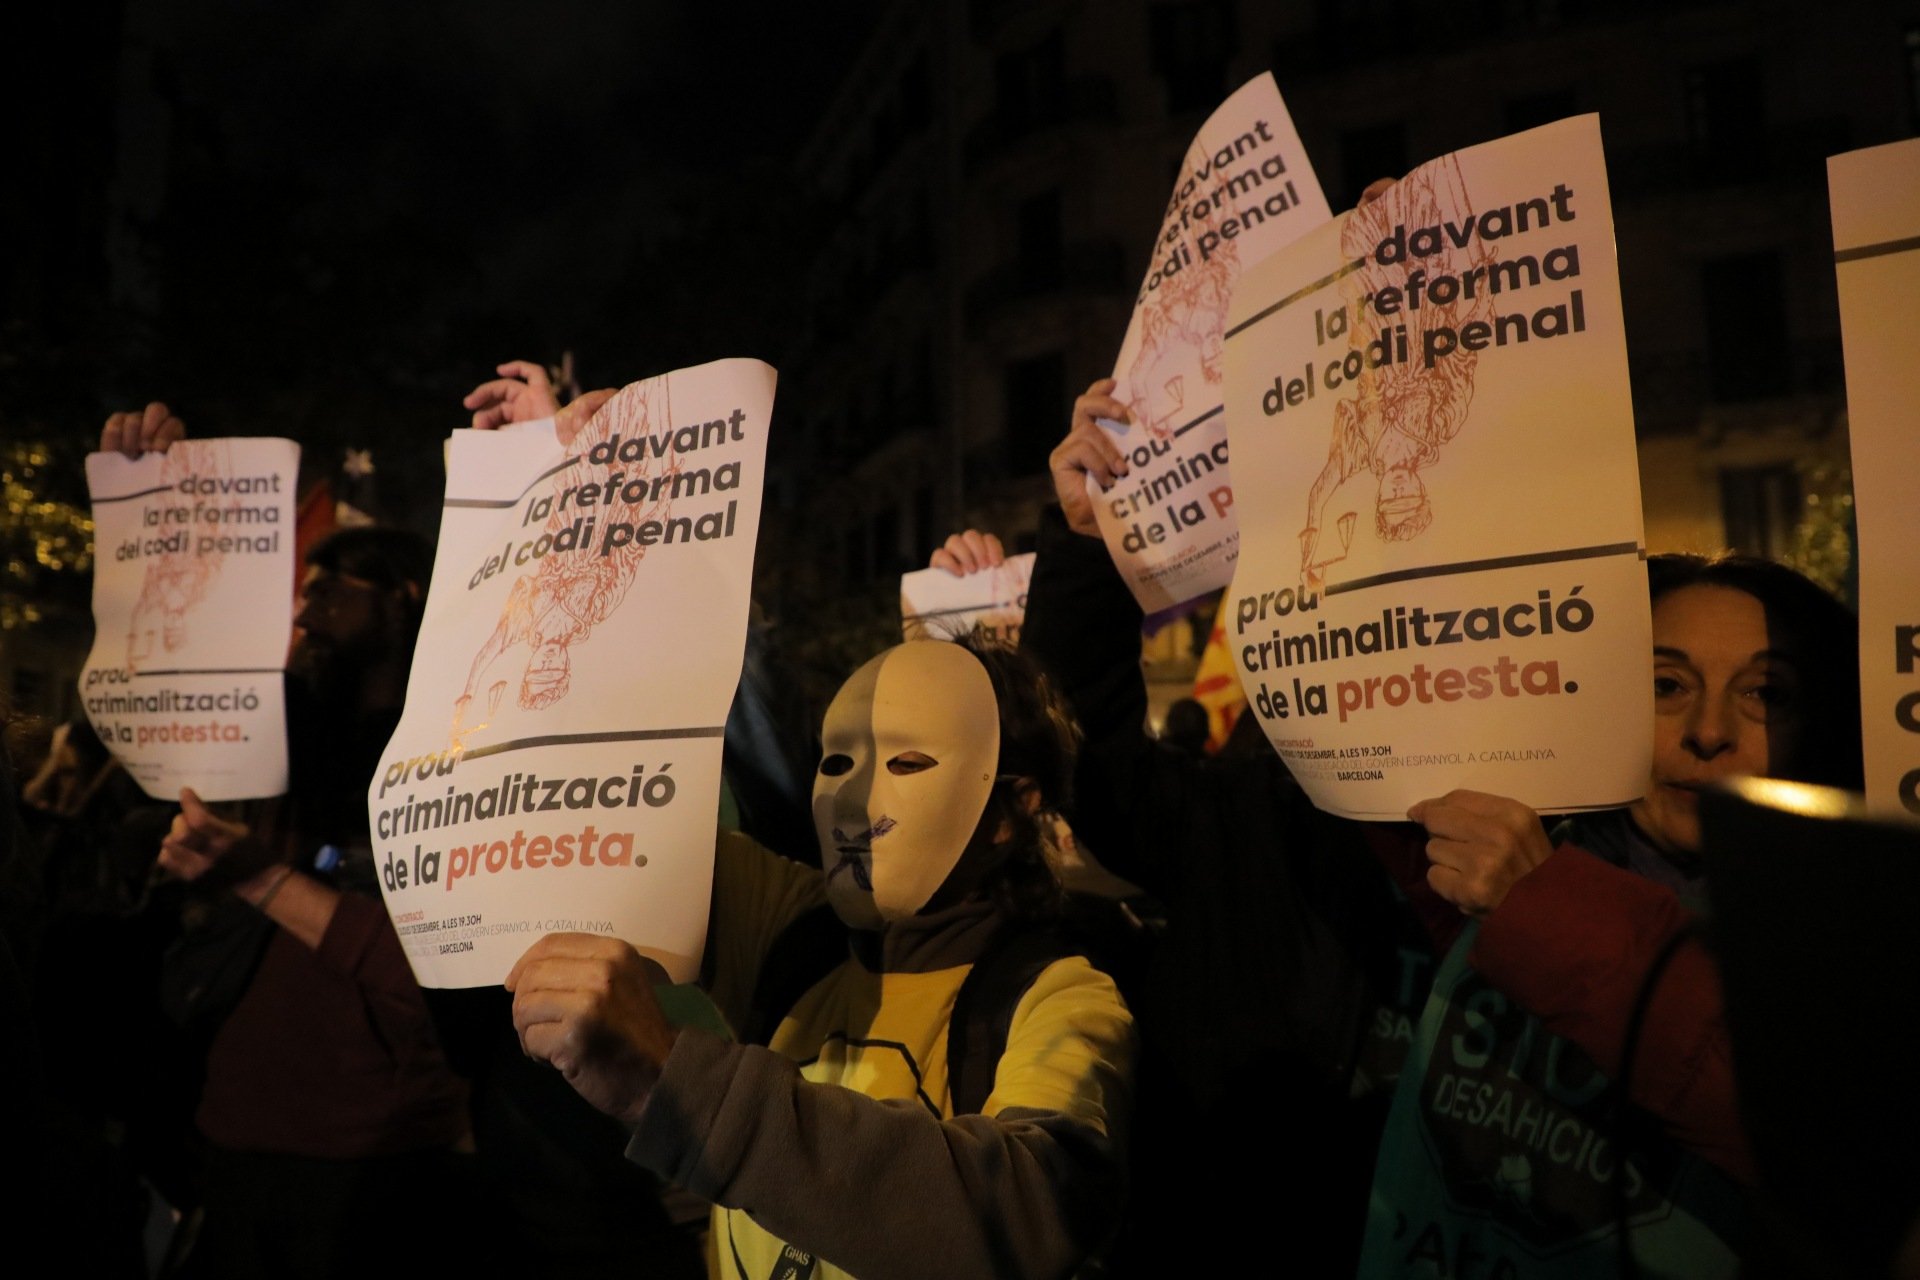 350 persones es manifesten contra la reforma del Codi Penal: "Prou criminalització"